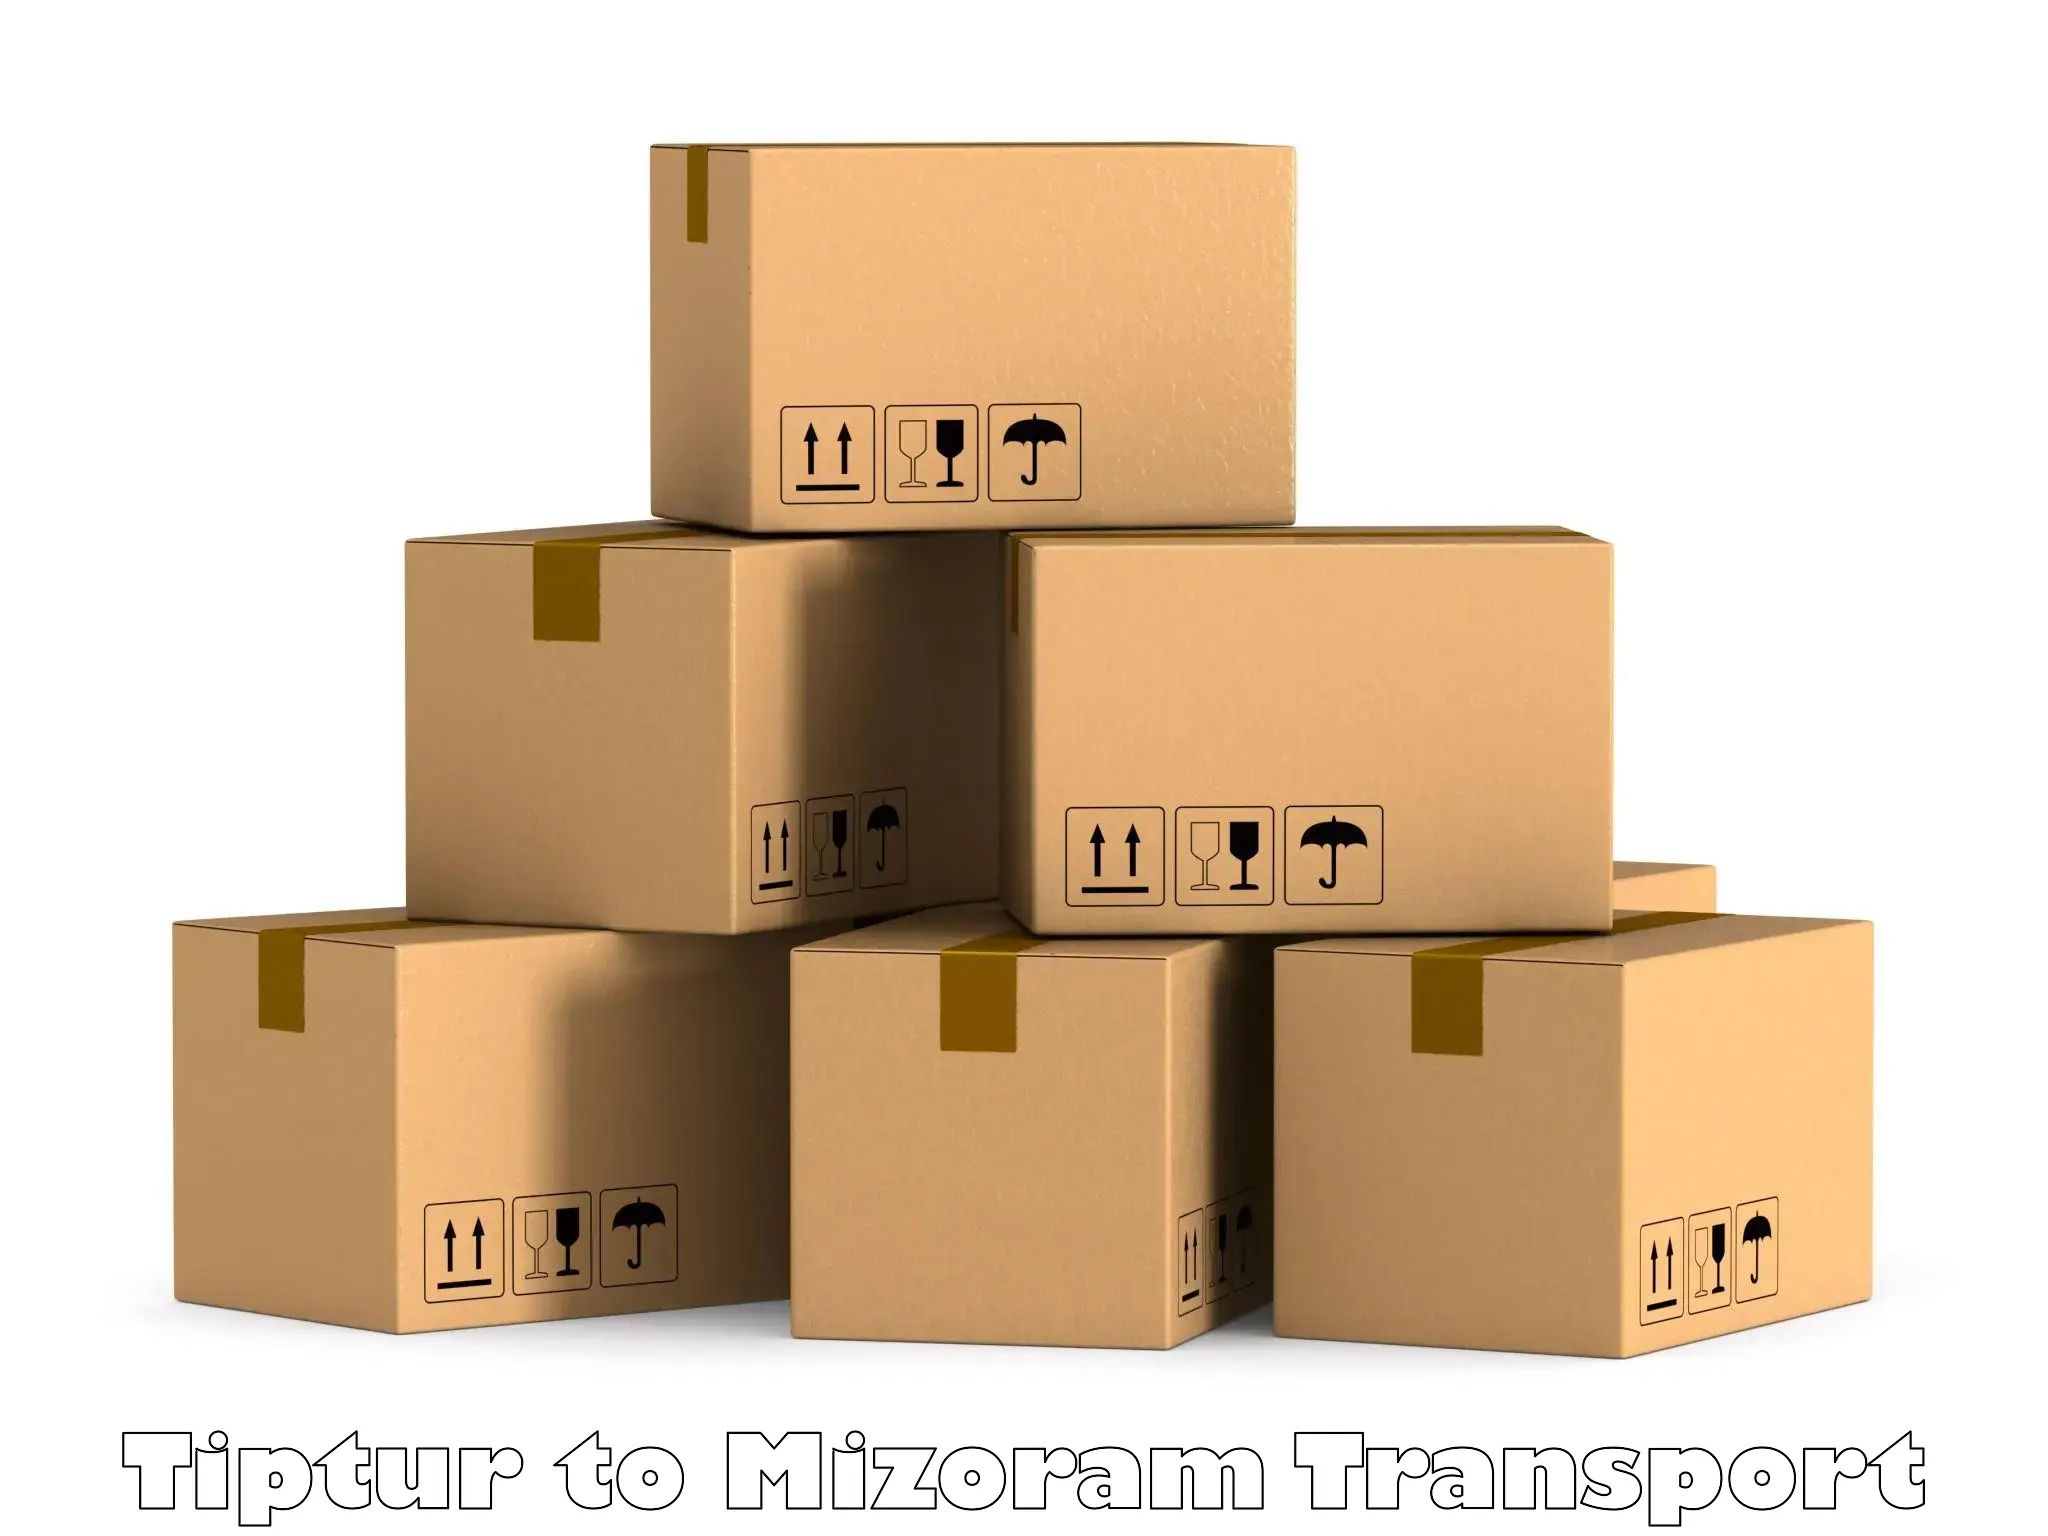 Container transport service Tiptur to Mizoram